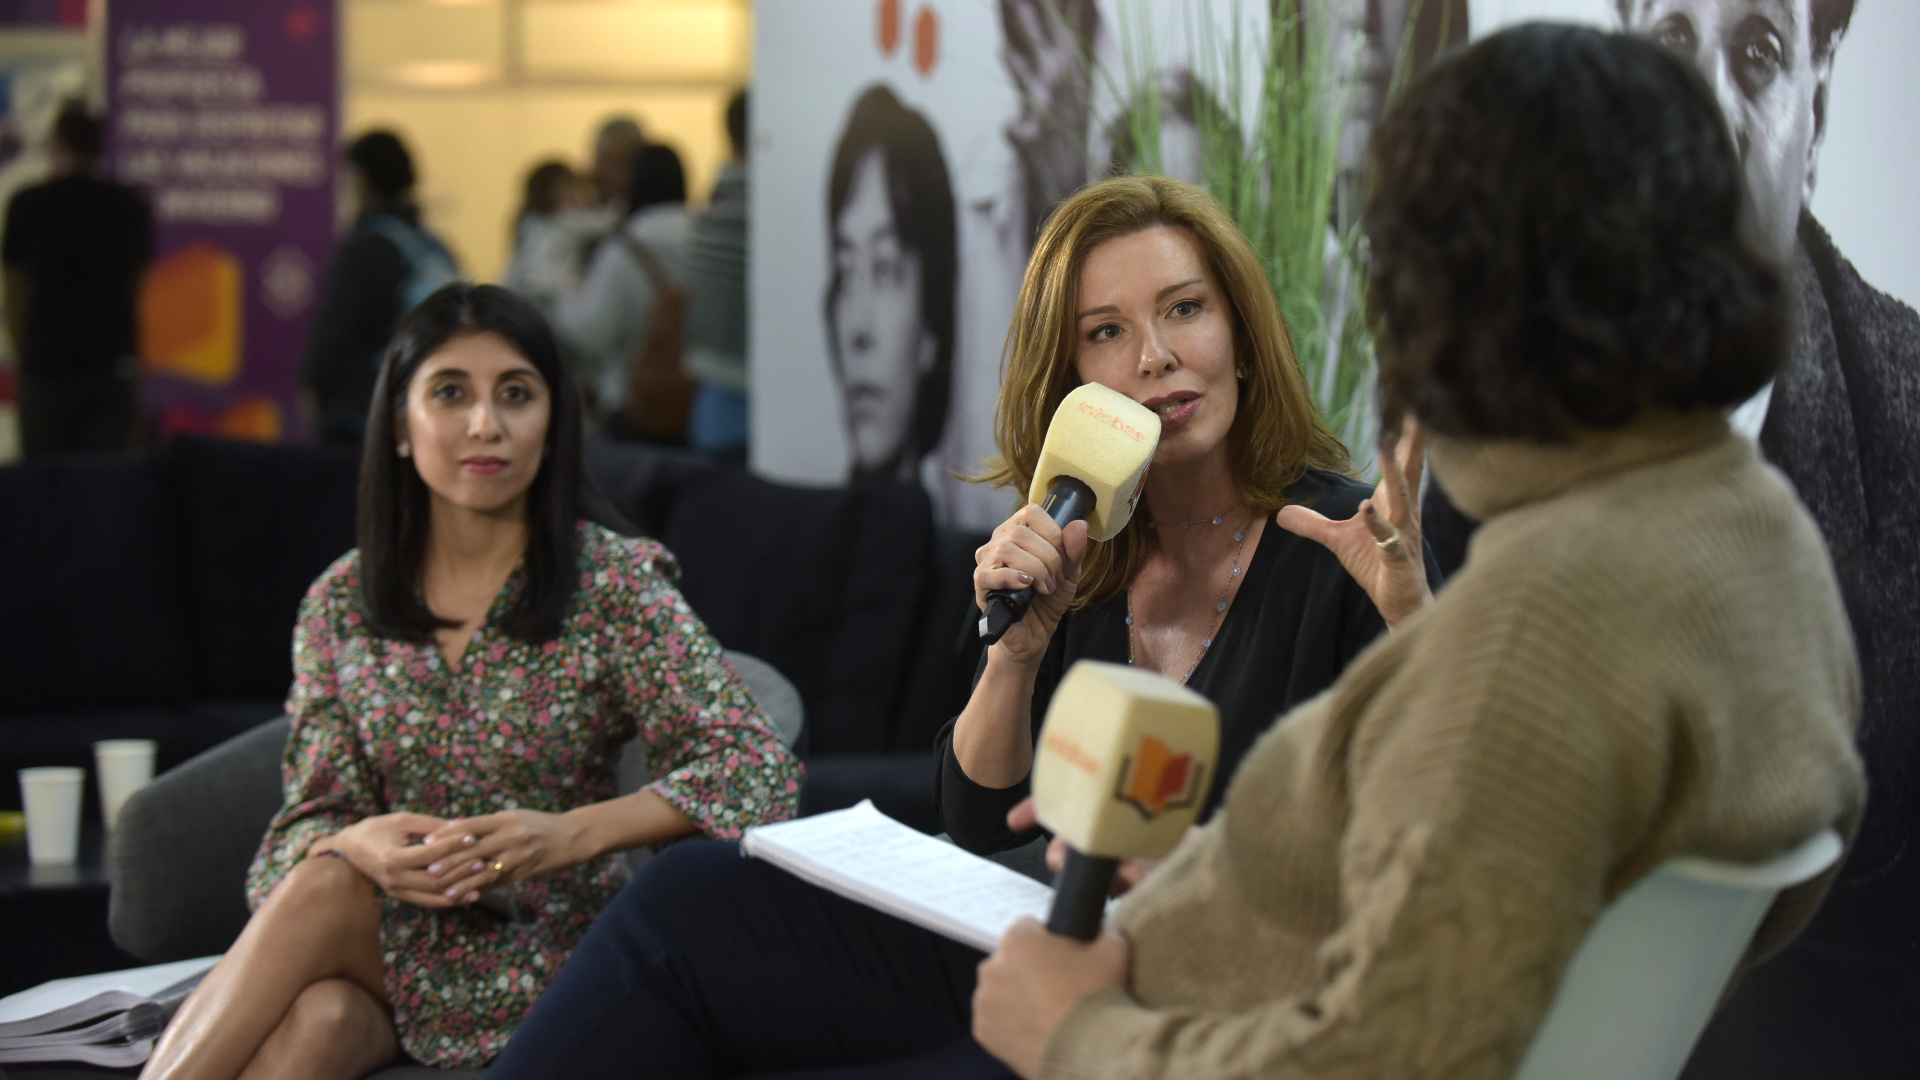 Nunzia Locatelli (centro) y Cintia Suárez (izq.) conversaron con la periodista Julieta Roffo en el stand de Leamos-Bajalibros. Crédito: Gustavo Gavotti